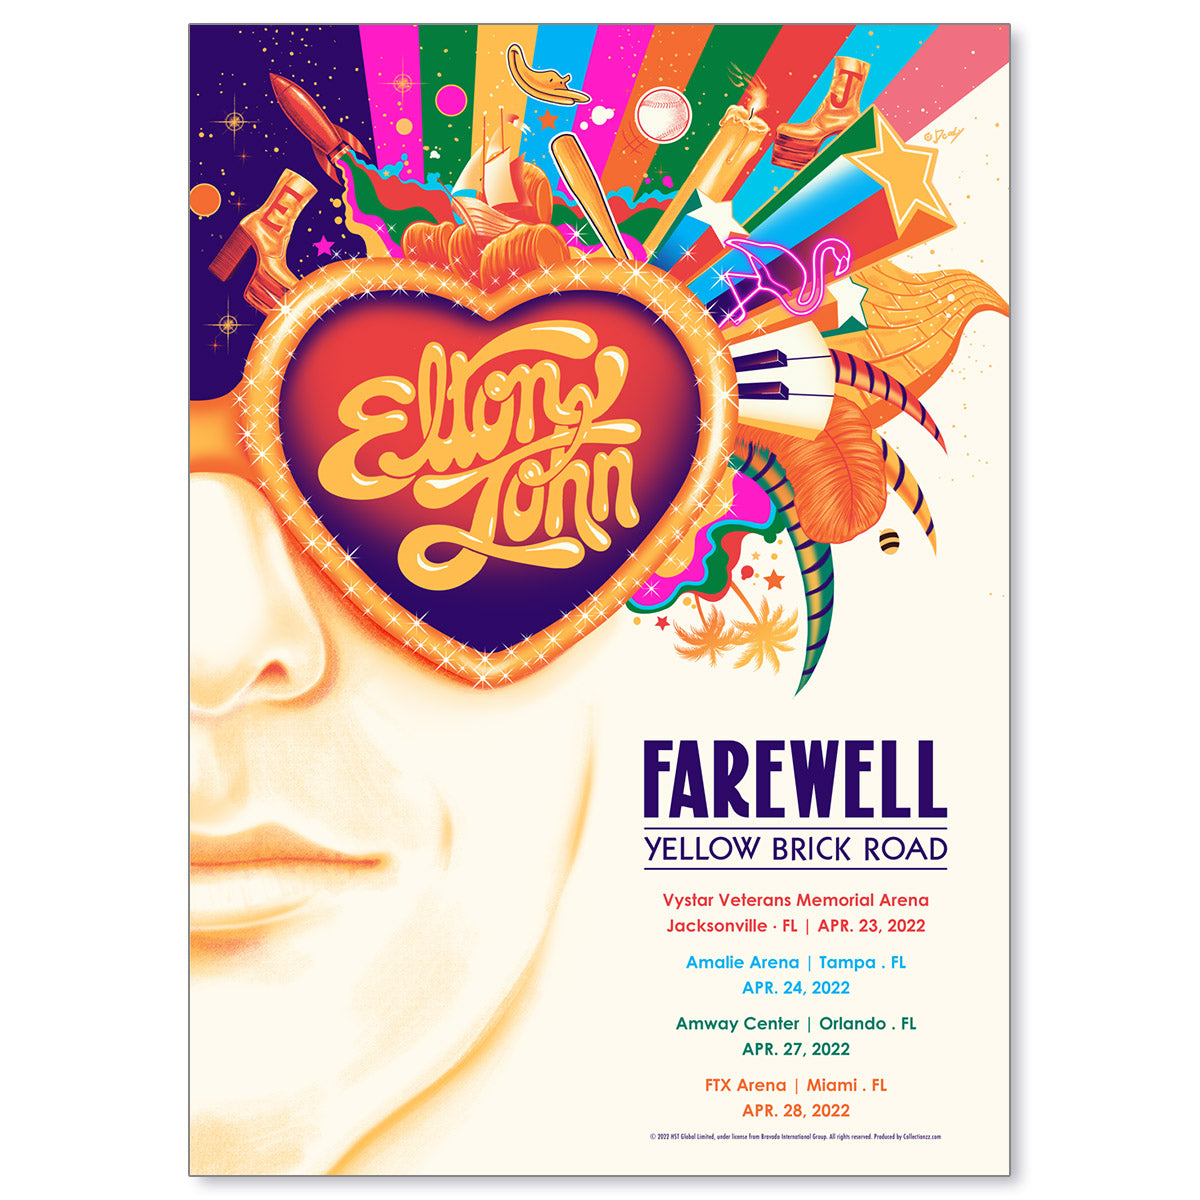 Elton John Florida Farewell Yellow Brick Road Tour April 2022